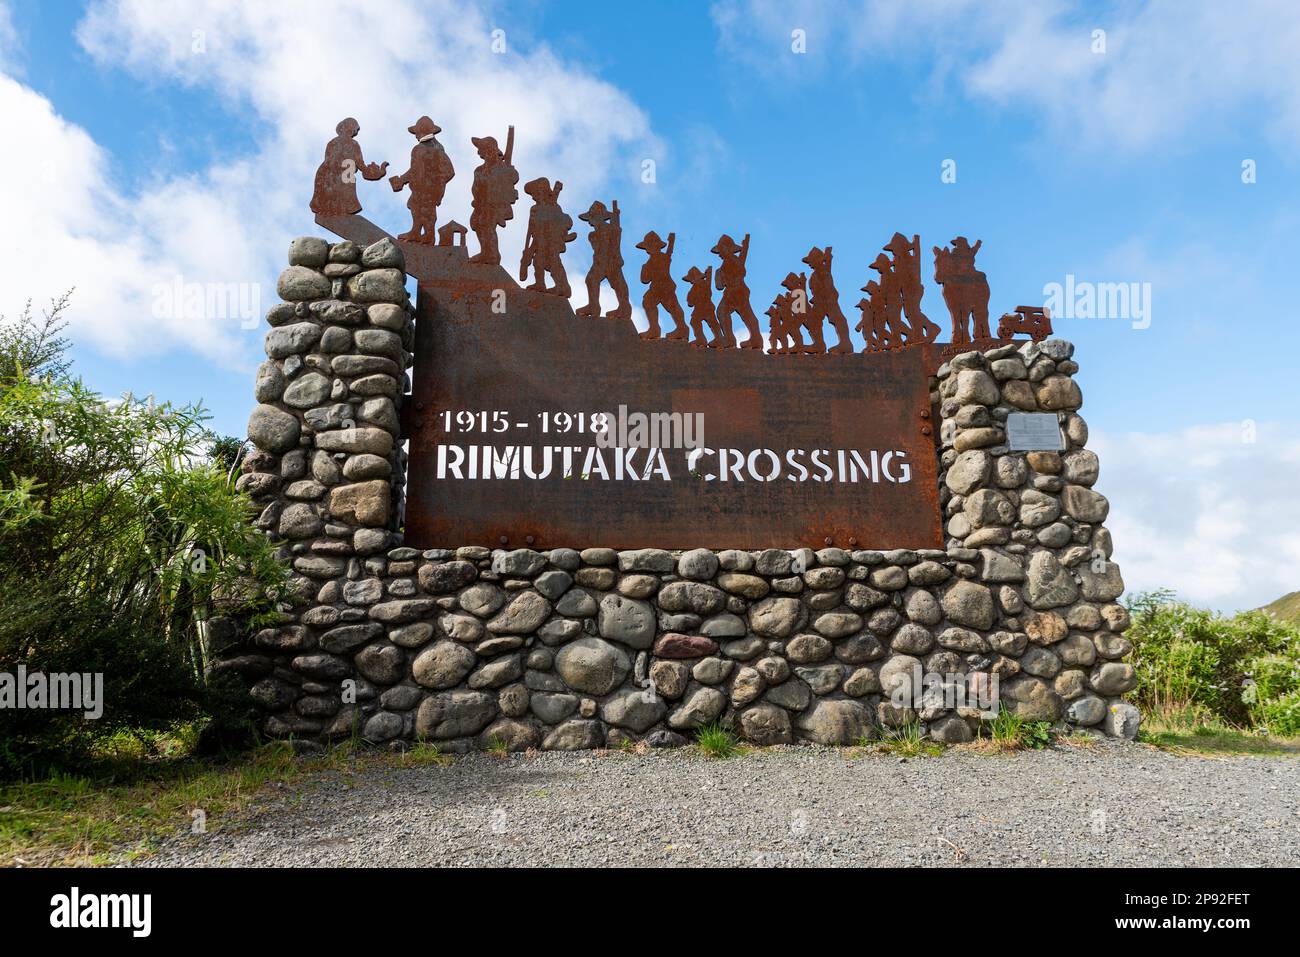 Struttura commemorativa di attraversamento di Rimutaka alla sommità del passo di Rimutaka (Remutaka). Marcare i soldati neozelandesi che marciarono su una collina per andare in guerra, WWI Foto Stock